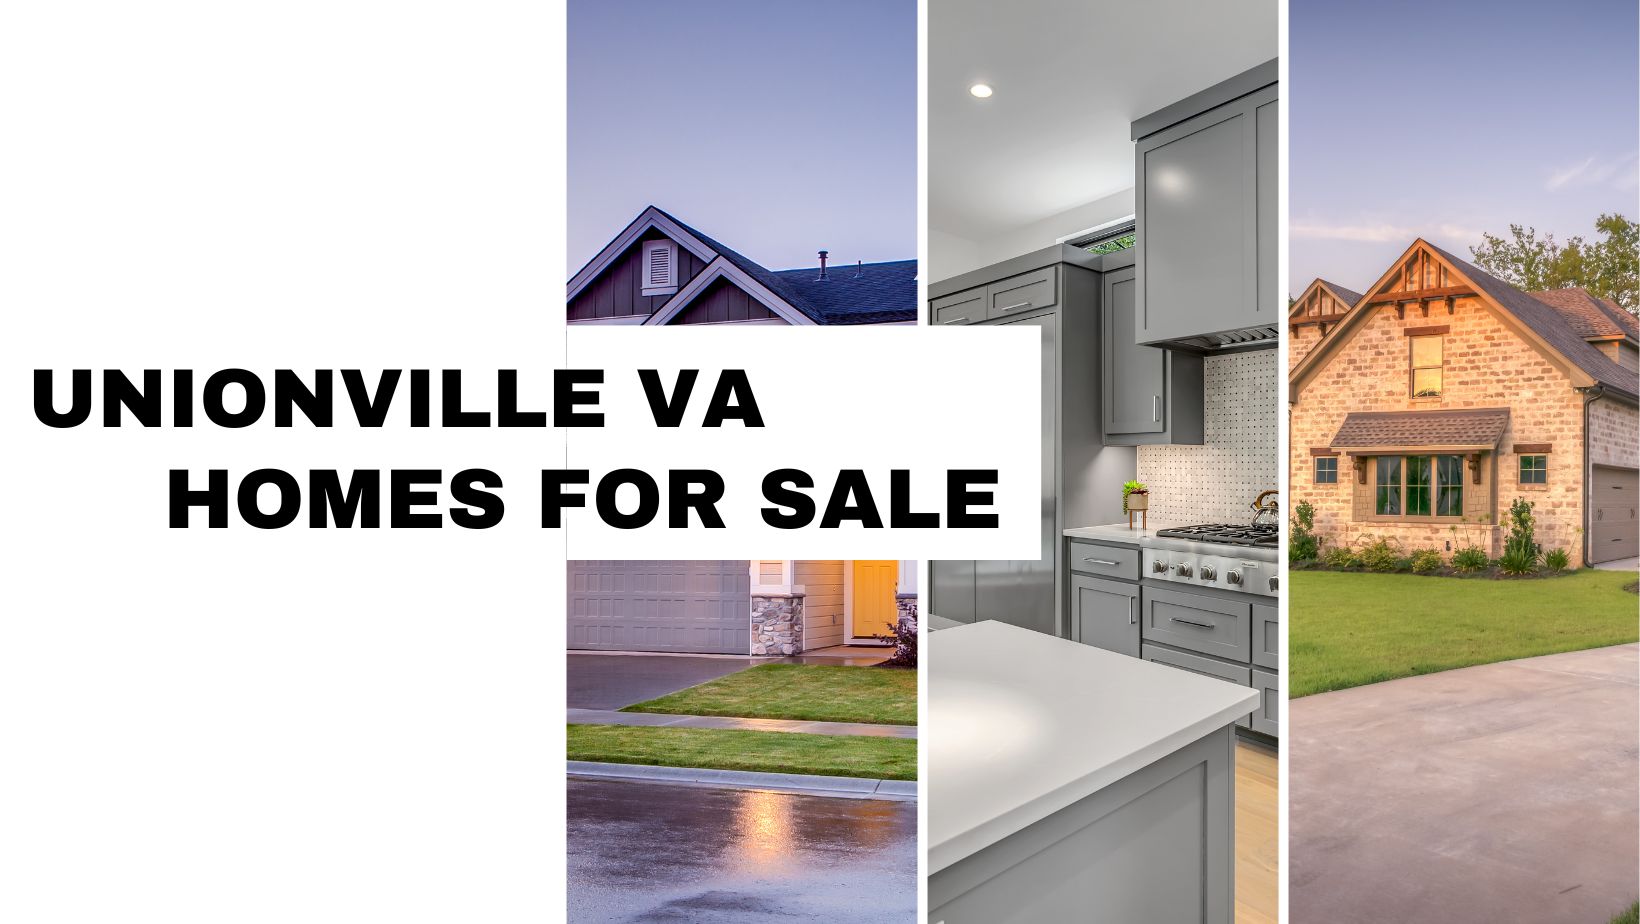 Unionville VA Homes for Sale Orange County